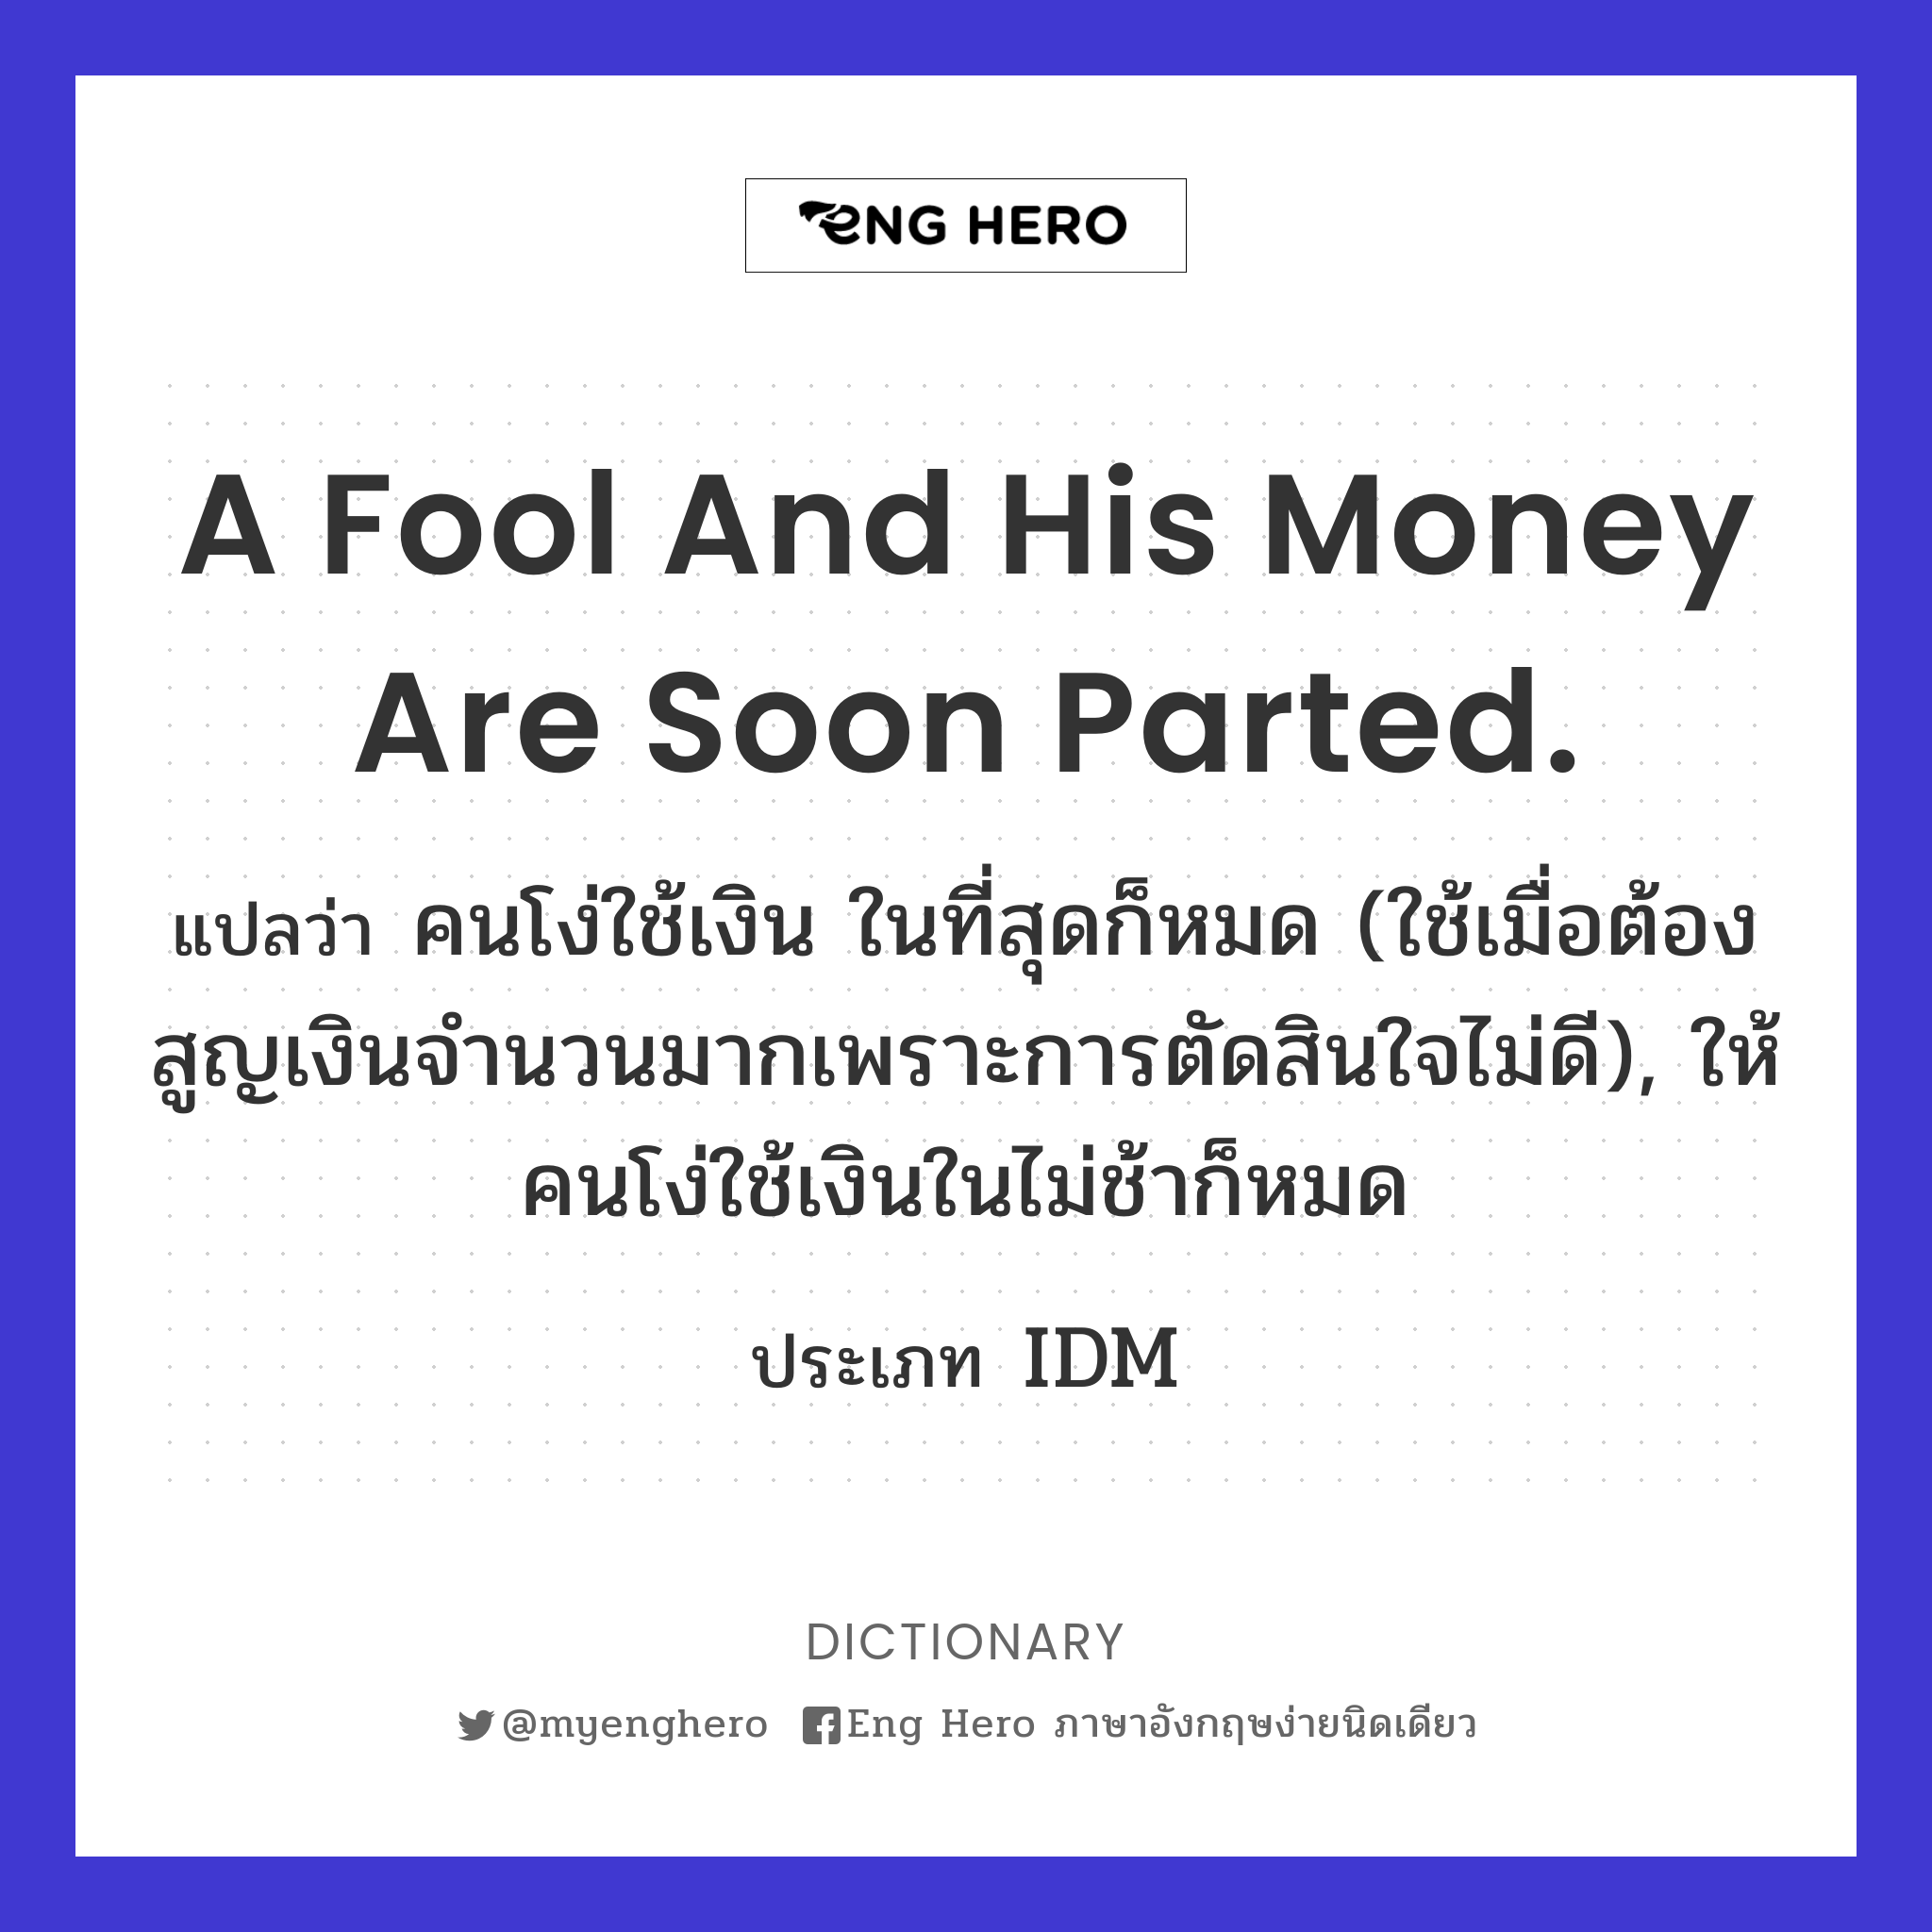 A Fool And His Money Are Soon Parted. แปลว่า คนโง่ใช้เงิน ในที่สุดก็หมด (ใช้เมื่อต้องสูญเงิน ...